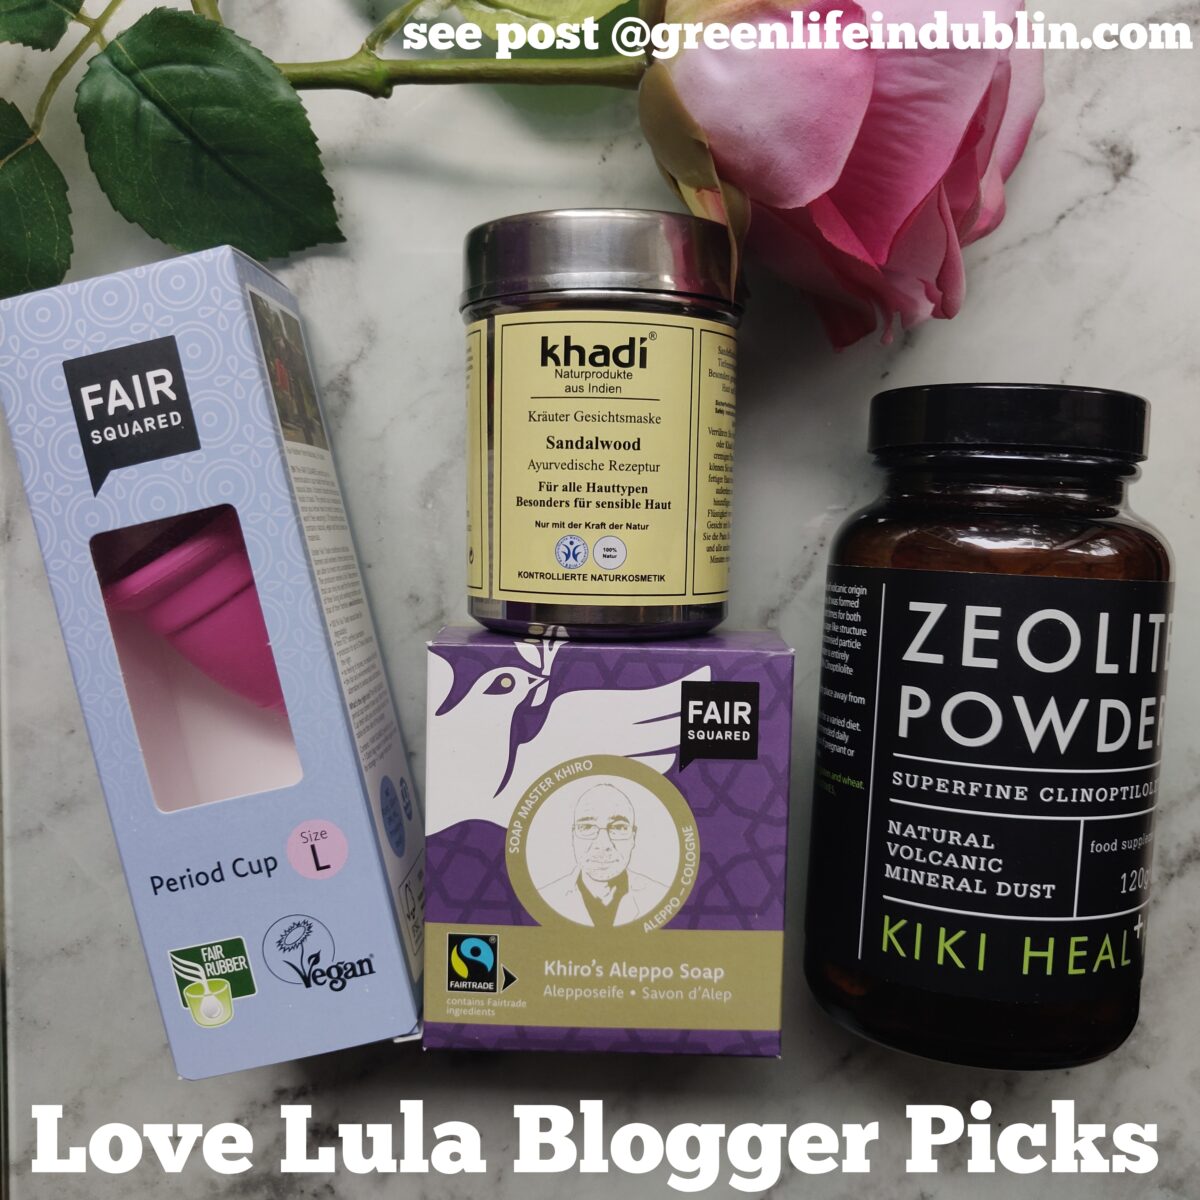 Love Lula Blogger Picks - Fair Squared, Kiki Health, Khadi